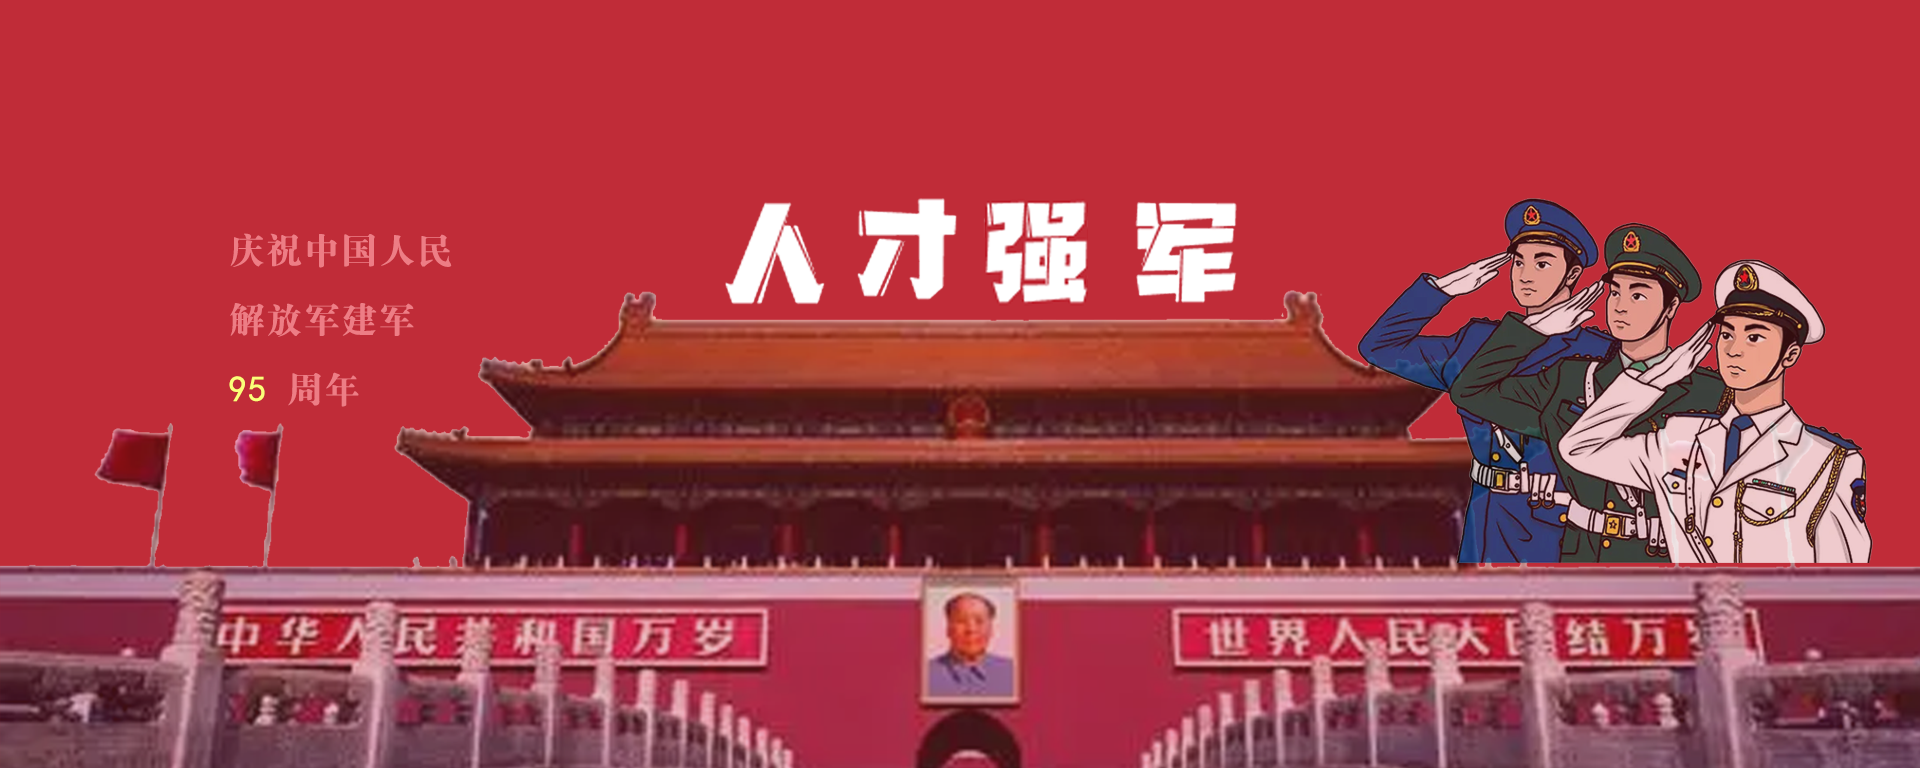 热烈庆祝中国人民解放军建军节95周年